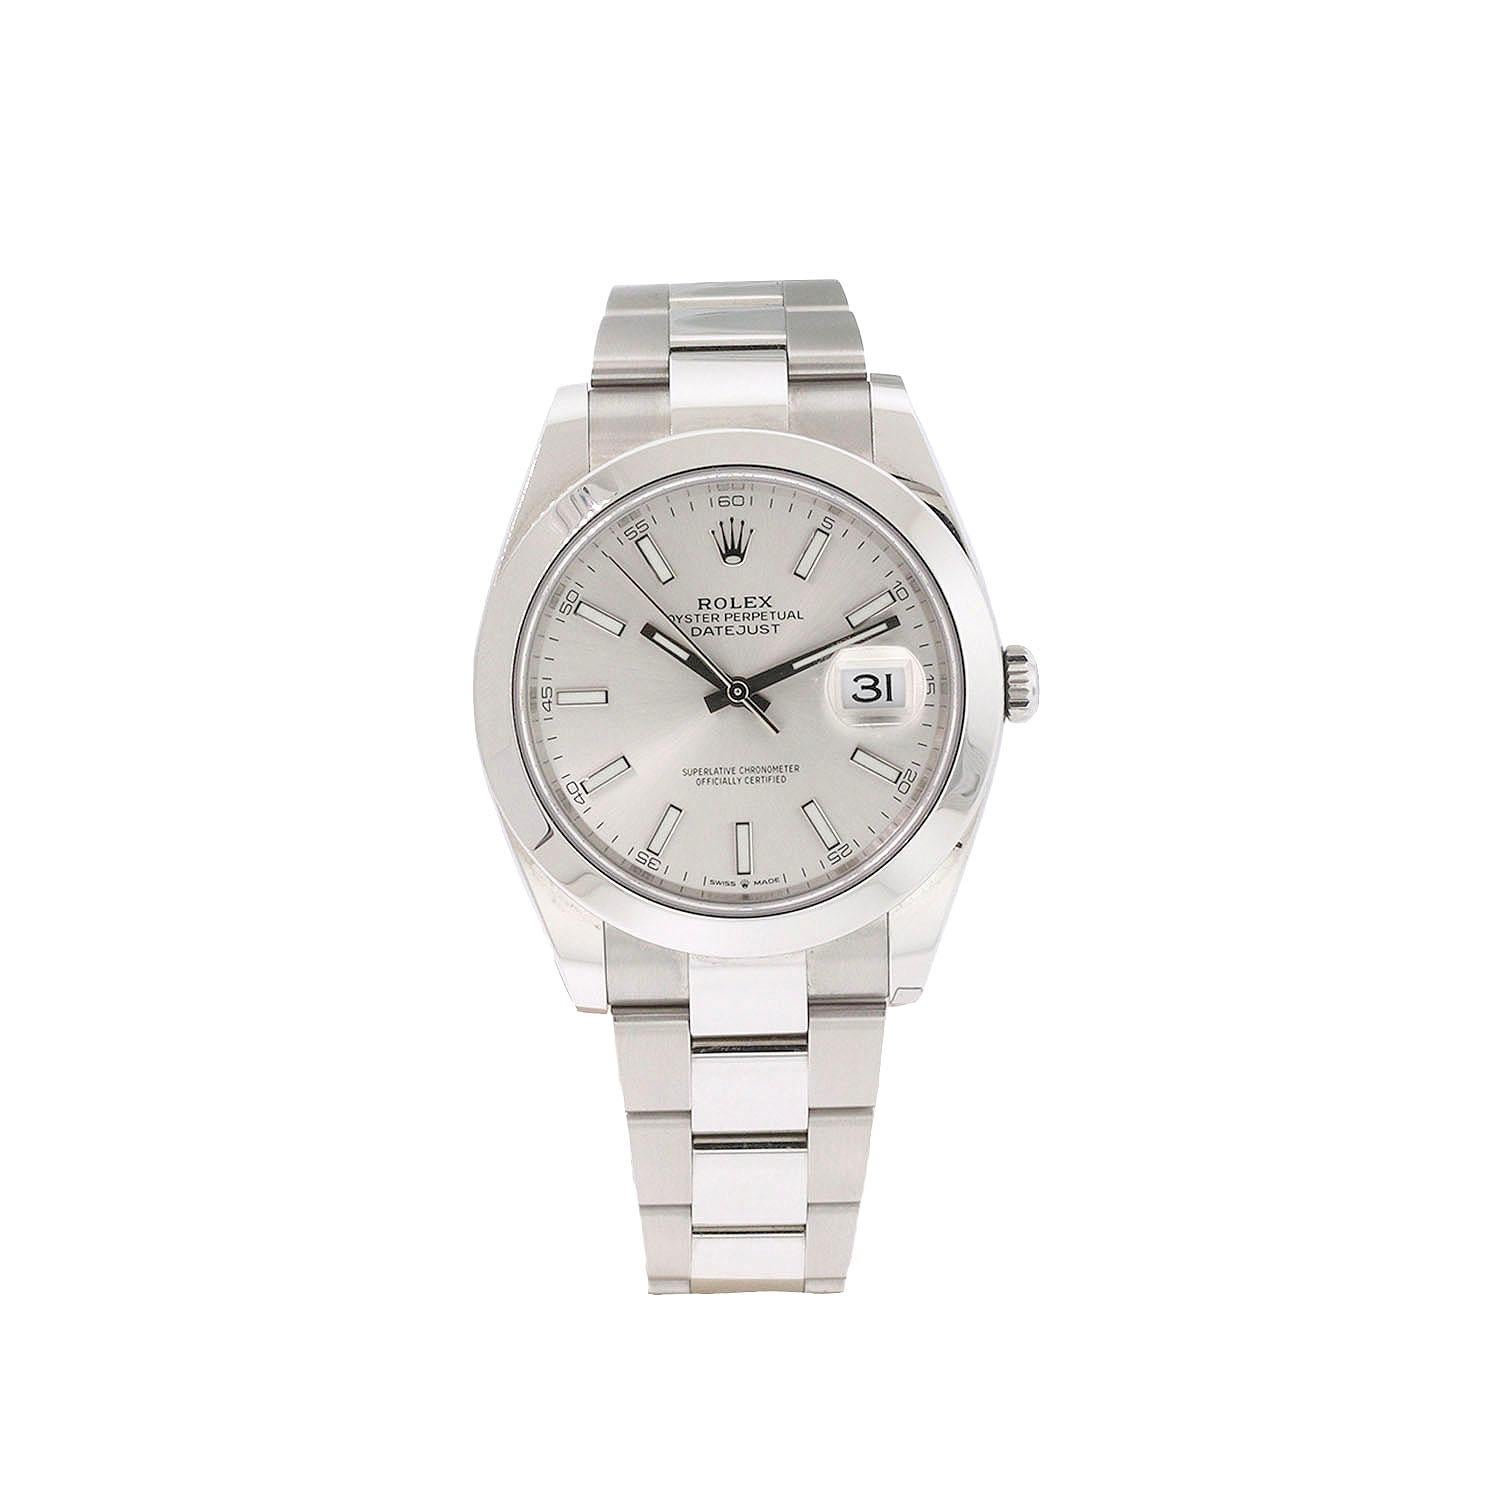 Die Rolex 126300 Datejust 41 ist ein zeitloser Ausdruck von Stil und Präzision. Diese exquisite Uhr verfügt über ein silbernes Zifferblatt mit leuchtenden Stundenmarkierungen, die das Ablesen bei jedem Licht erleichtern. Mit ihrem Edelstahlgehäuse